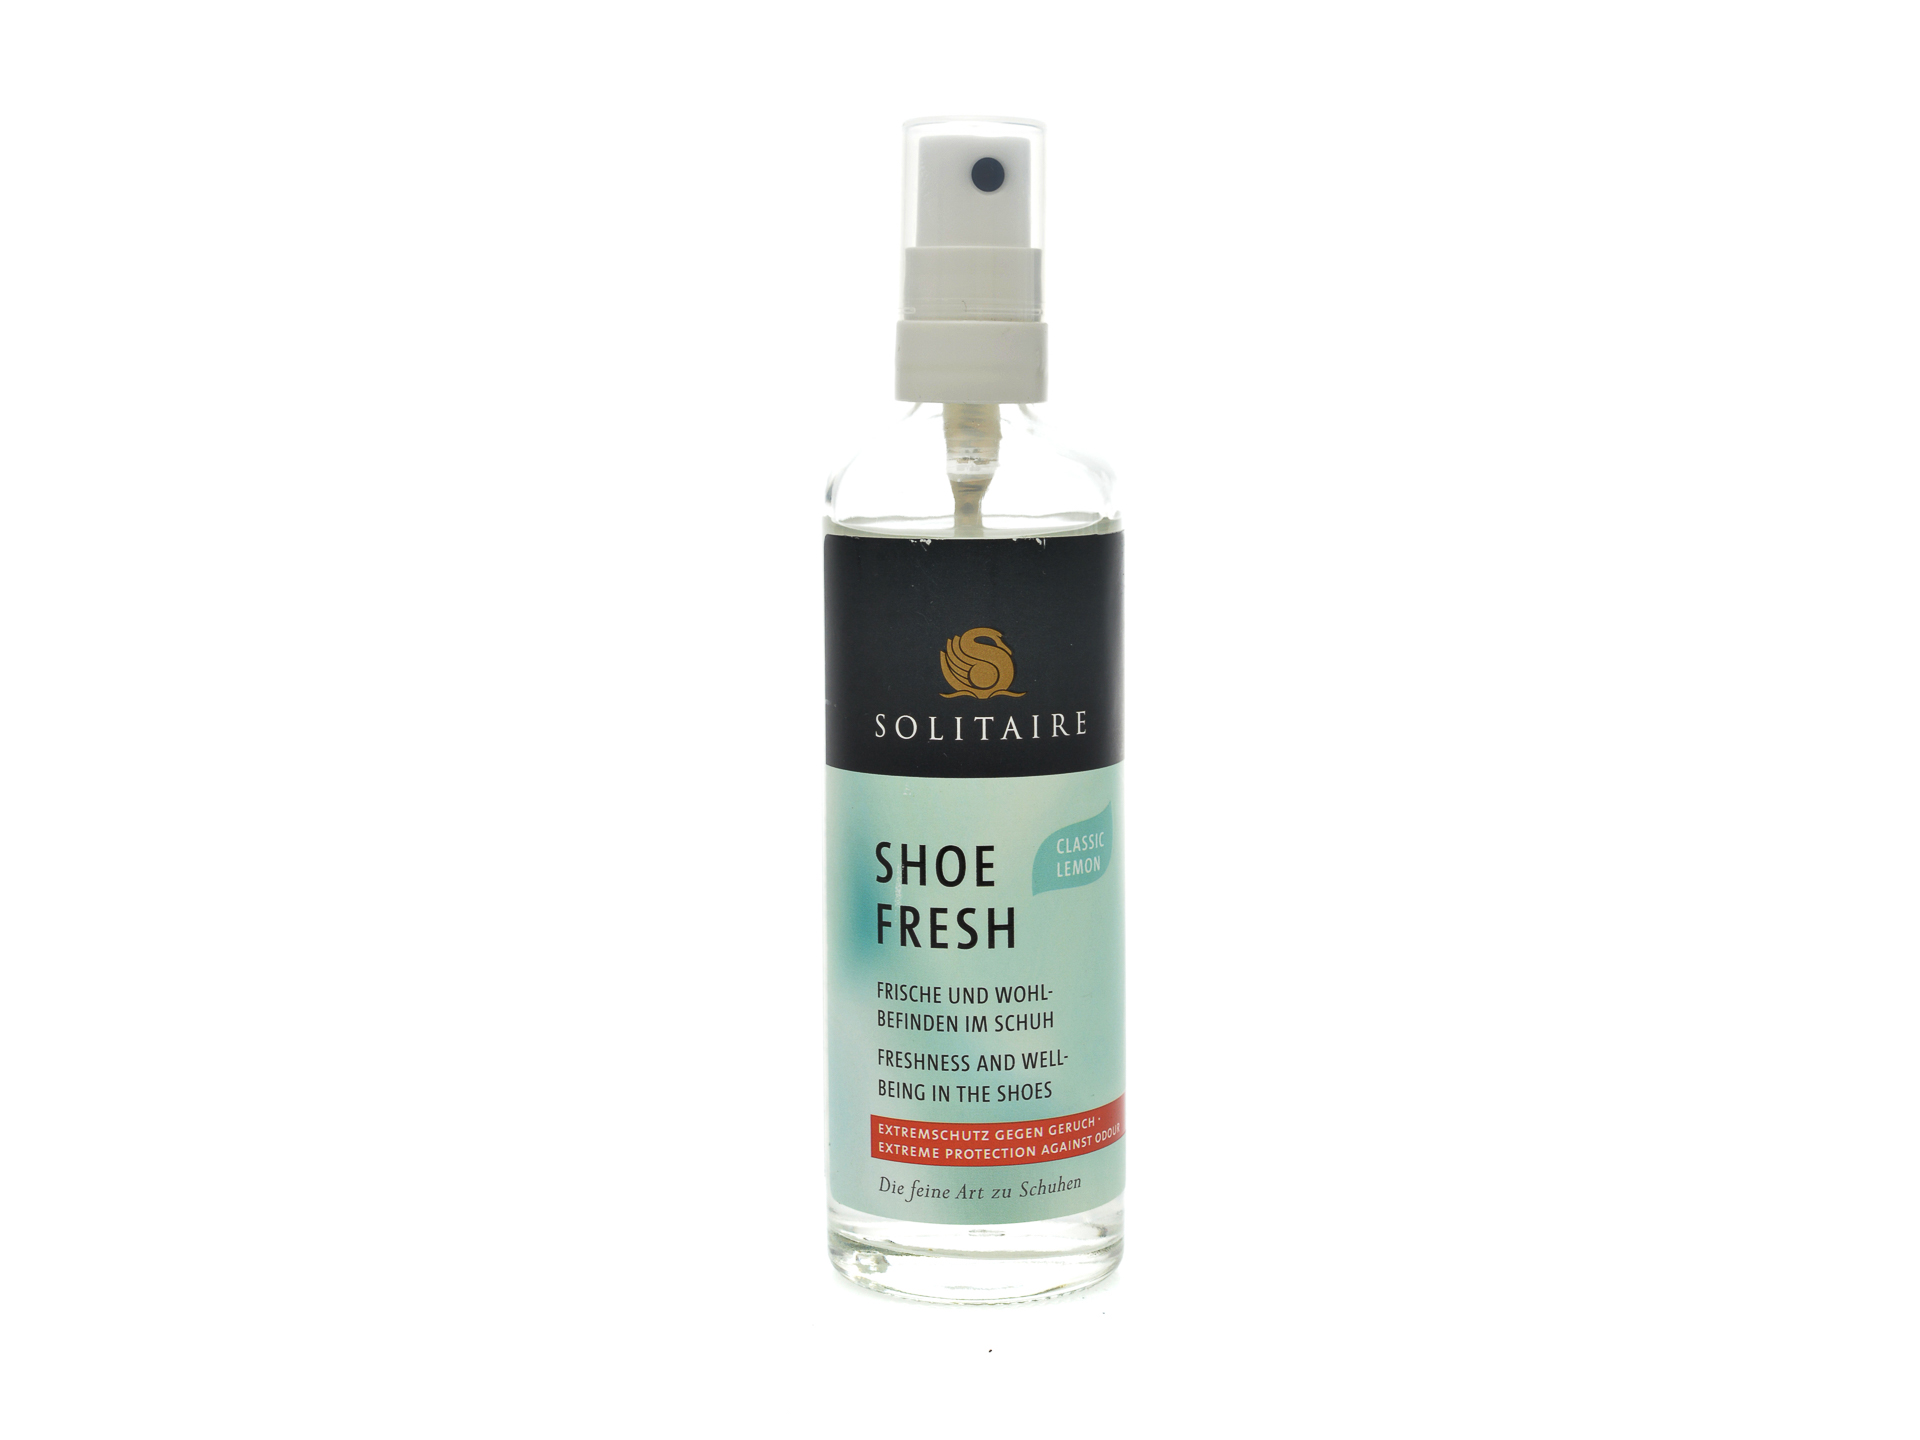 PR Spray pentru mentinerea mirosului placut in incaltaminte, Solitaire /accesorii/produse imagine noua 2022